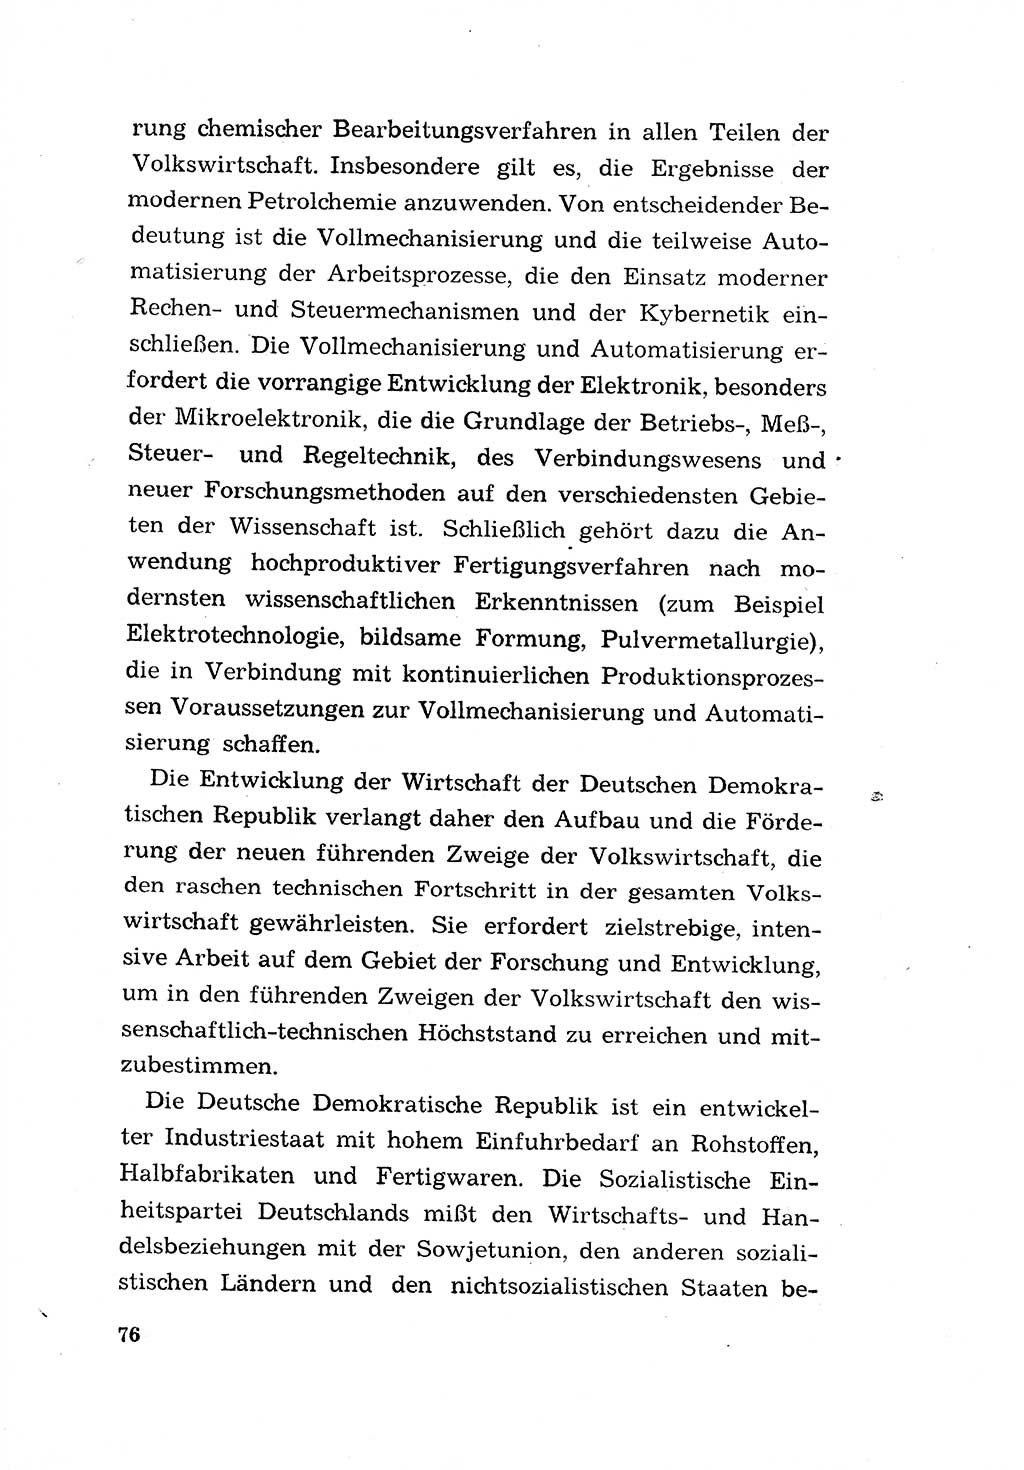 Programm der Sozialistischen Einheitspartei Deutschlands (SED) [Deutsche Demokratische Republik (DDR)] 1963, Seite 76 (Progr. SED DDR 1963, S. 76)